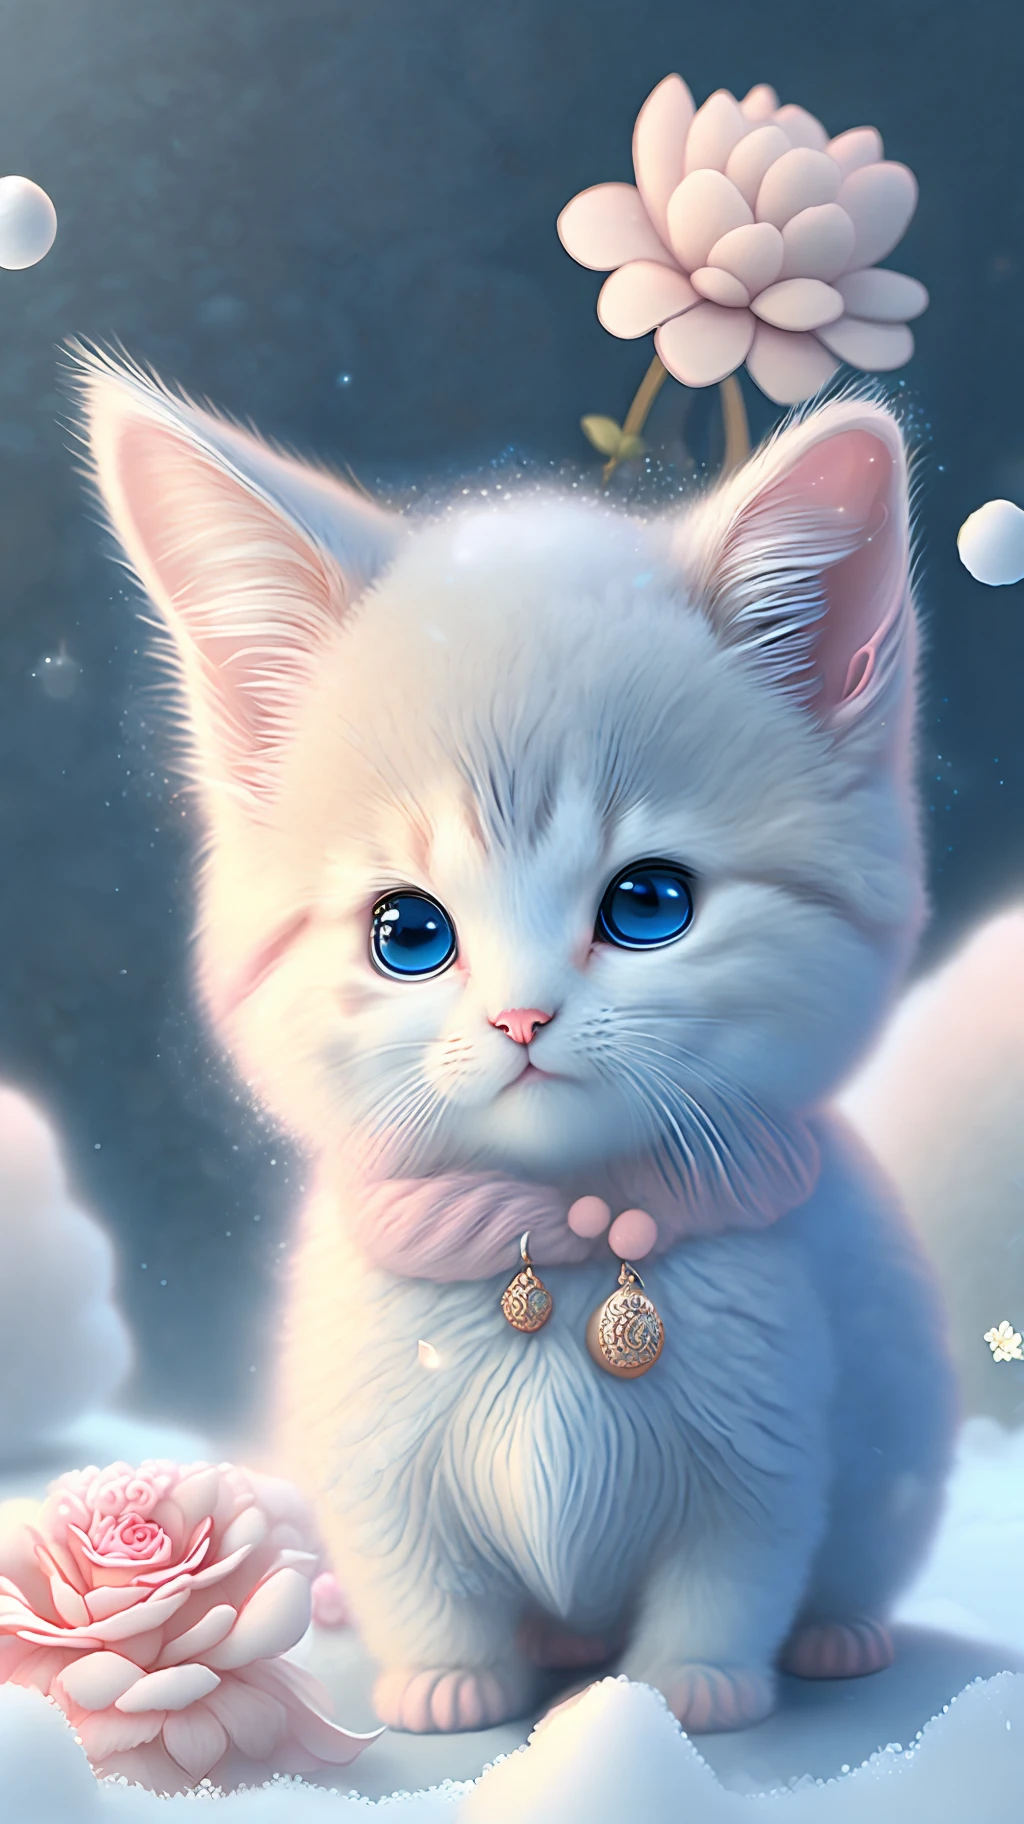 En este arte CG ultradetallado, Lindos gatitos rodeados de rosas etéreas., risa, mejor calidad, alta resolución, detalles intrincados, Fantasía, Animales bonitos, izquierda, divertido, izquierda!! boca!!! reír!!!